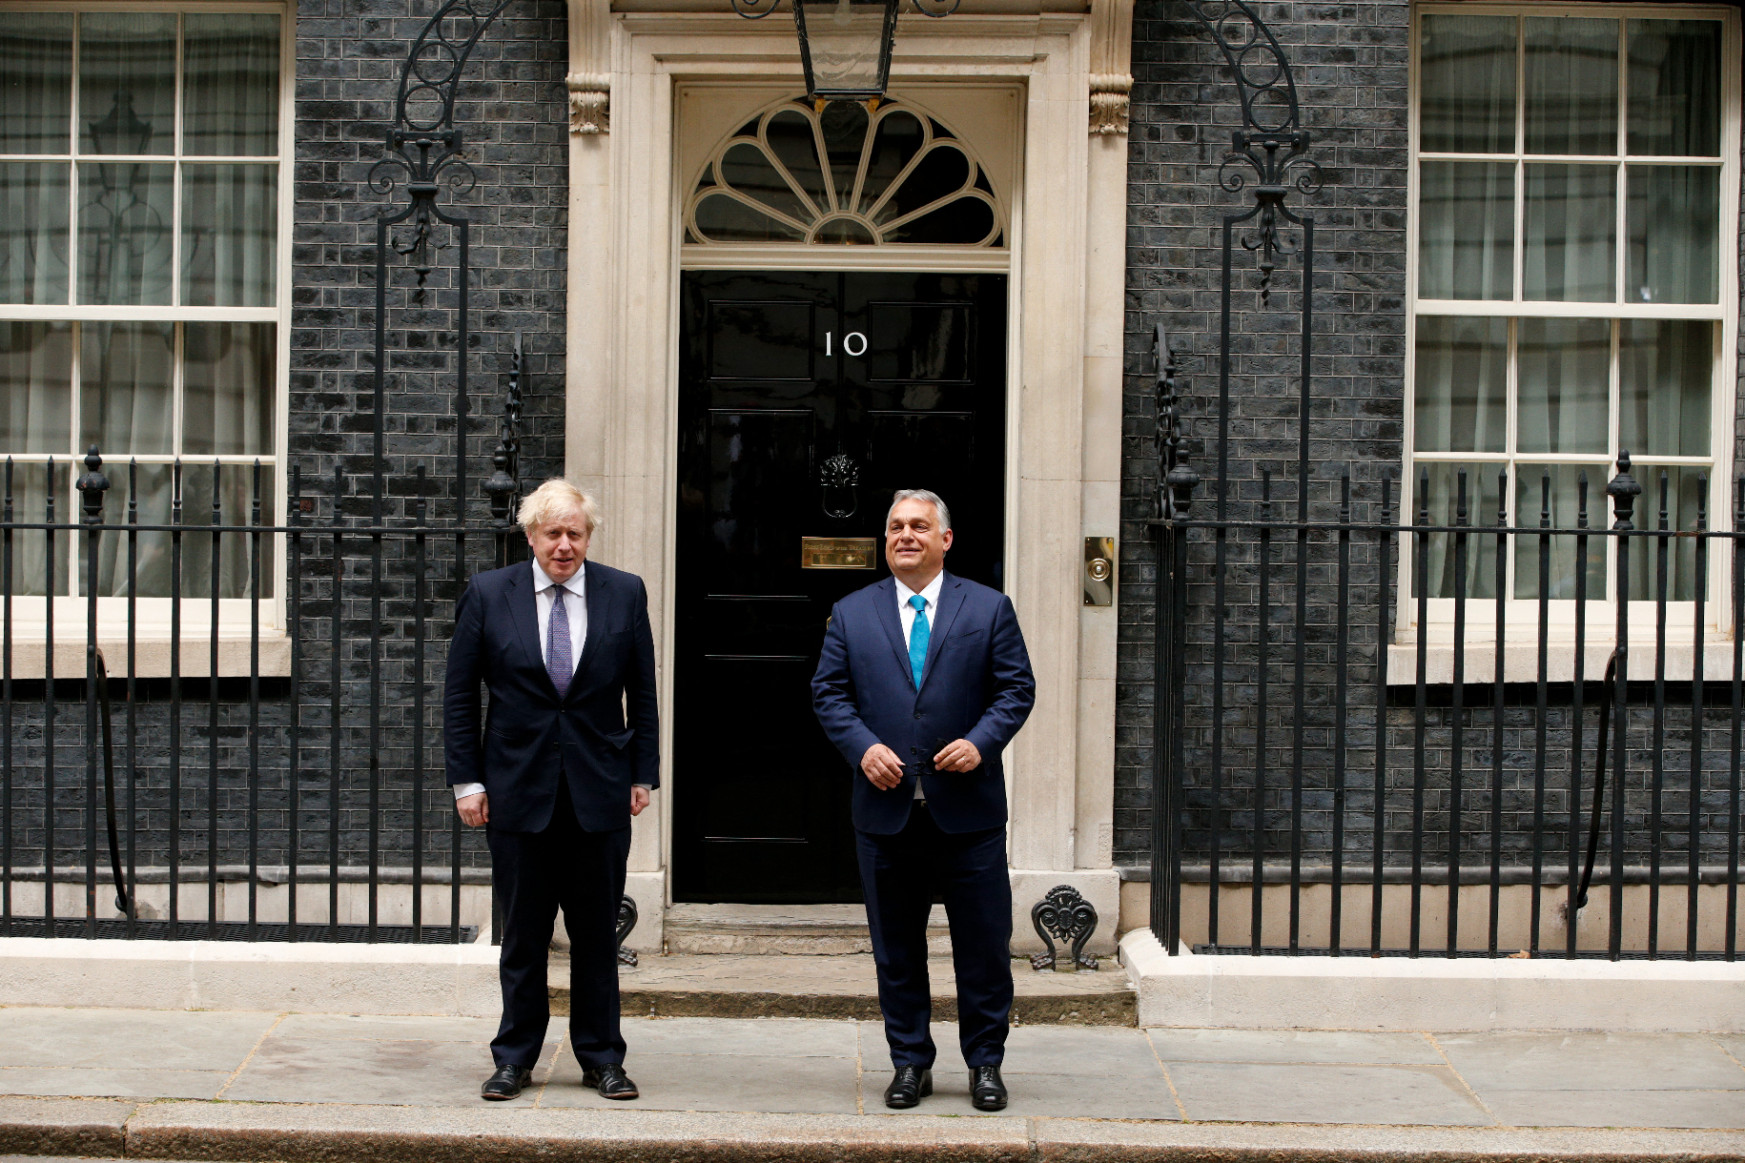 Boris Johnson aggályait fejezte ki az emberi jogok magyarországi helyzete miatt